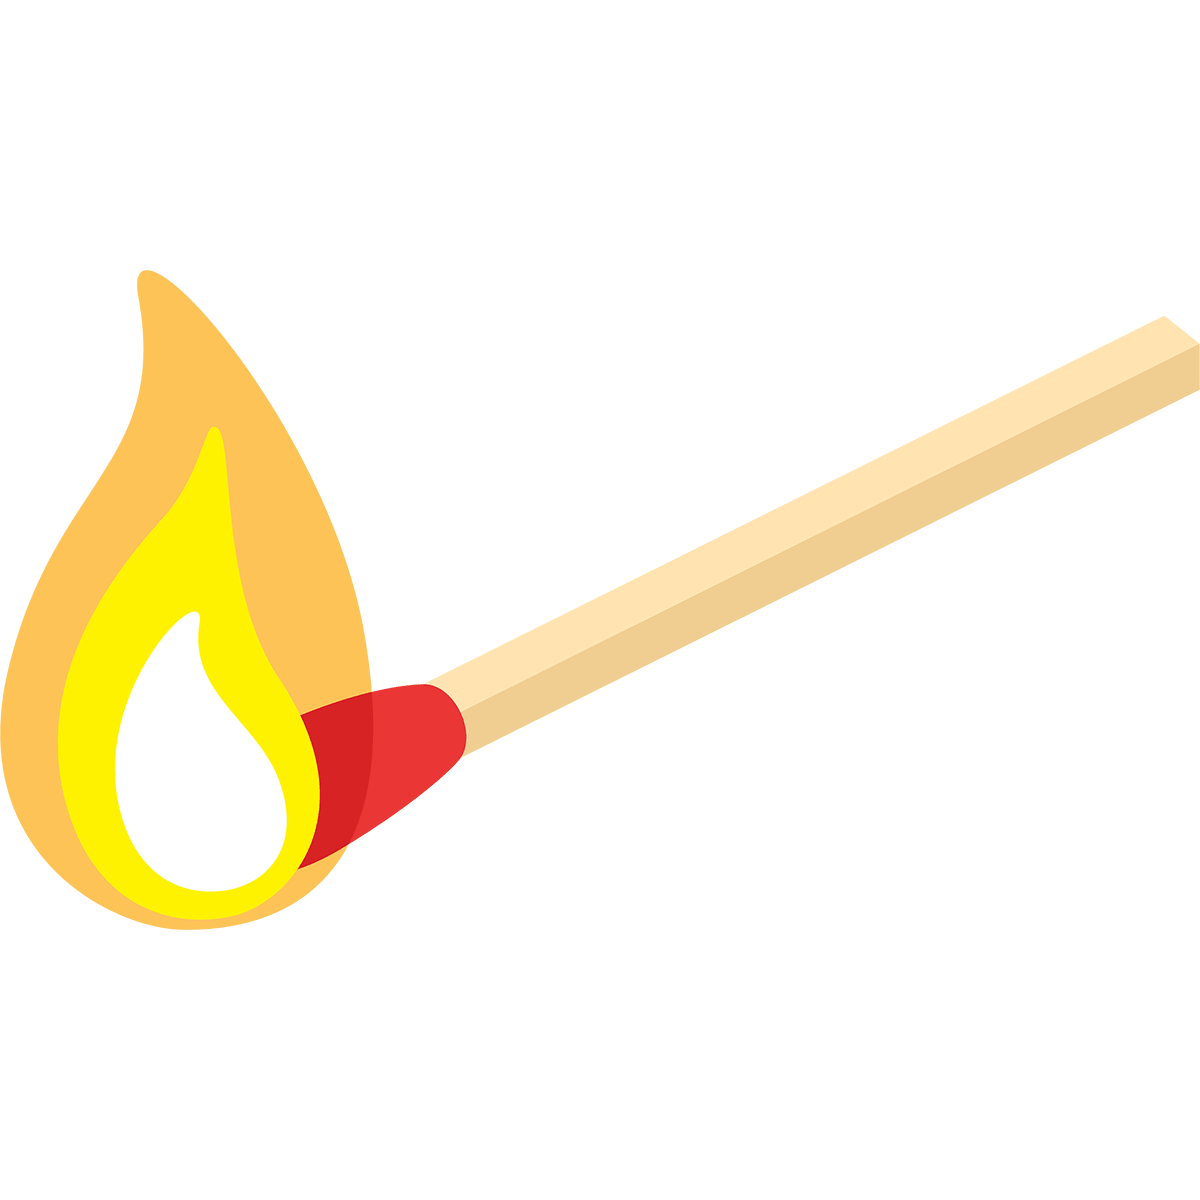 火のついたマッチ棒の無料イラスト